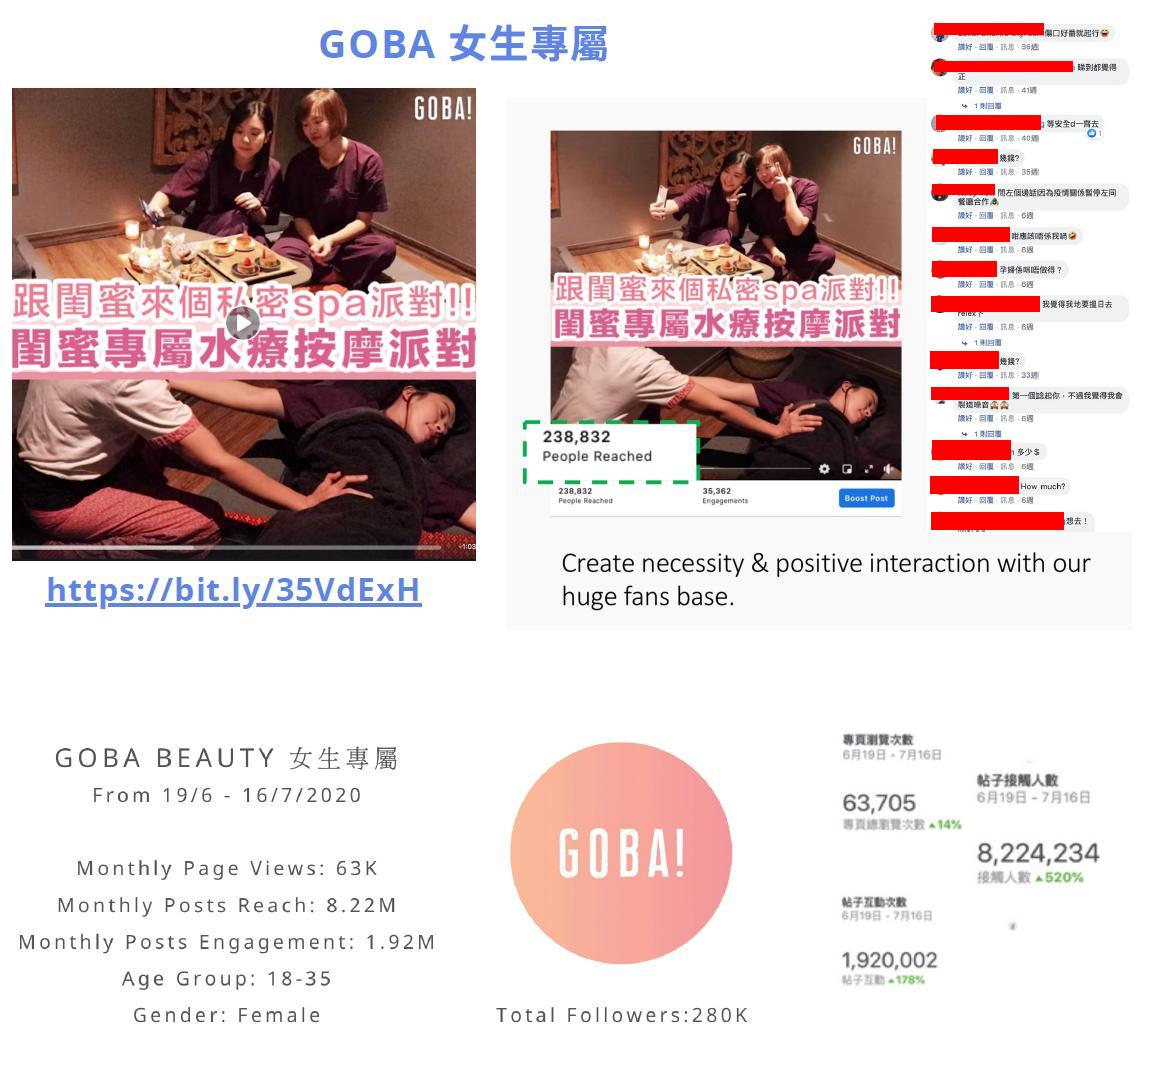 参考成功 Facebook 专页例子: GOBA女生专属 (28万粉丝) @ 脑爸打网页设计专家